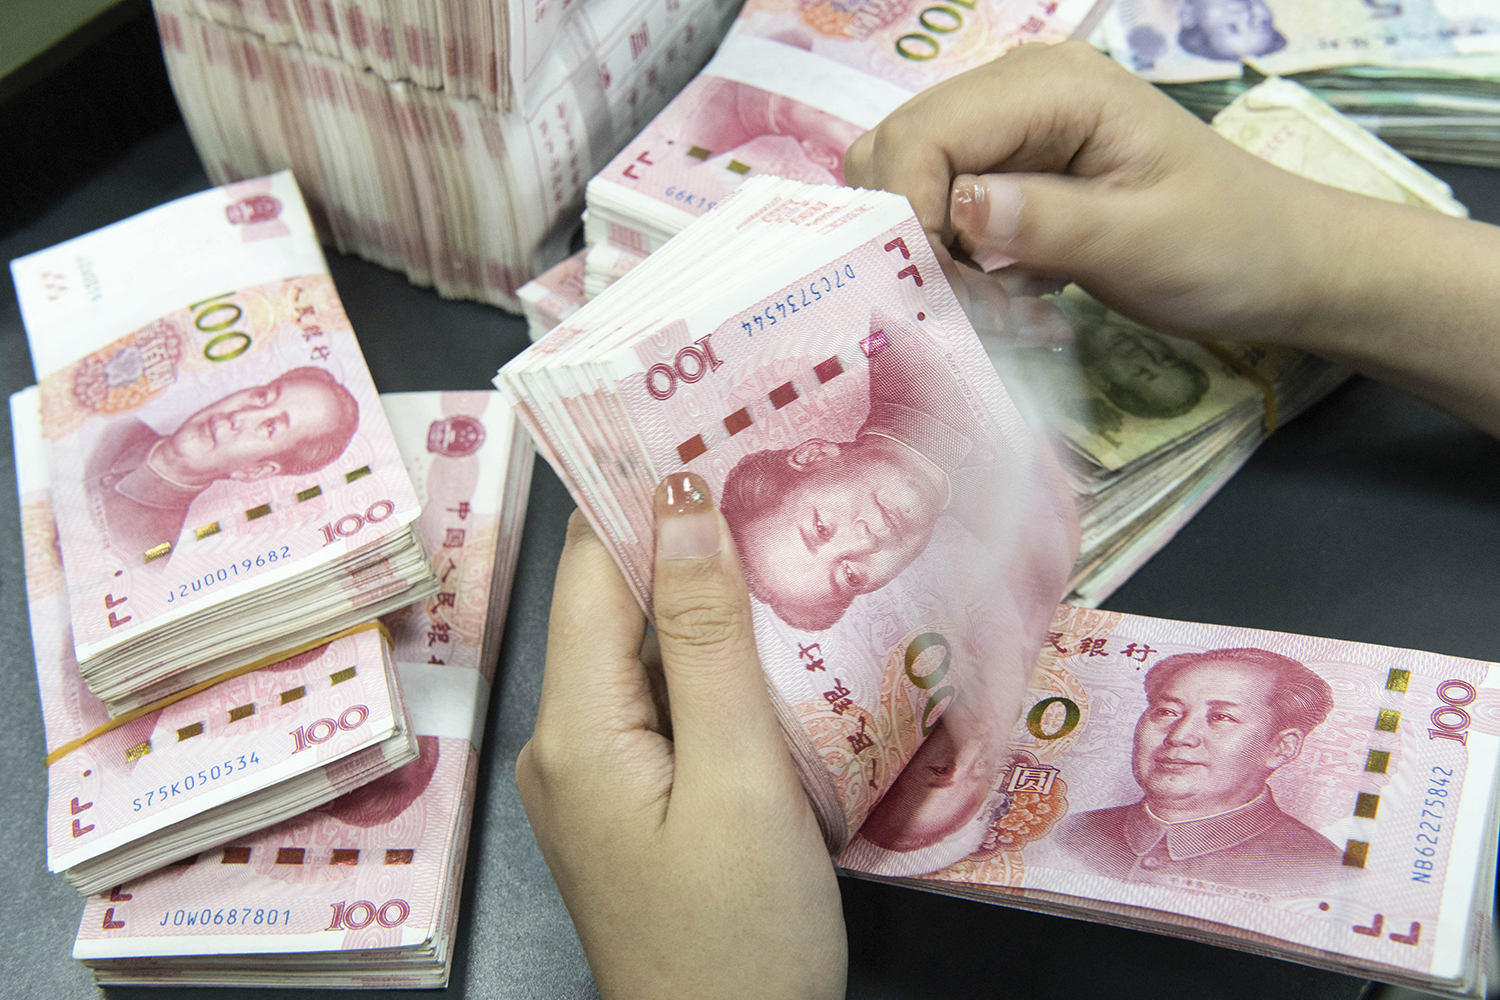 Nhân viên ngân hàng đếm các tờ tiền mệnh giá 100 nhân dân tệ ở Nam Thông, phía đông tỉnh Giang Tô, Trung Quốc. Ảnh: AFP